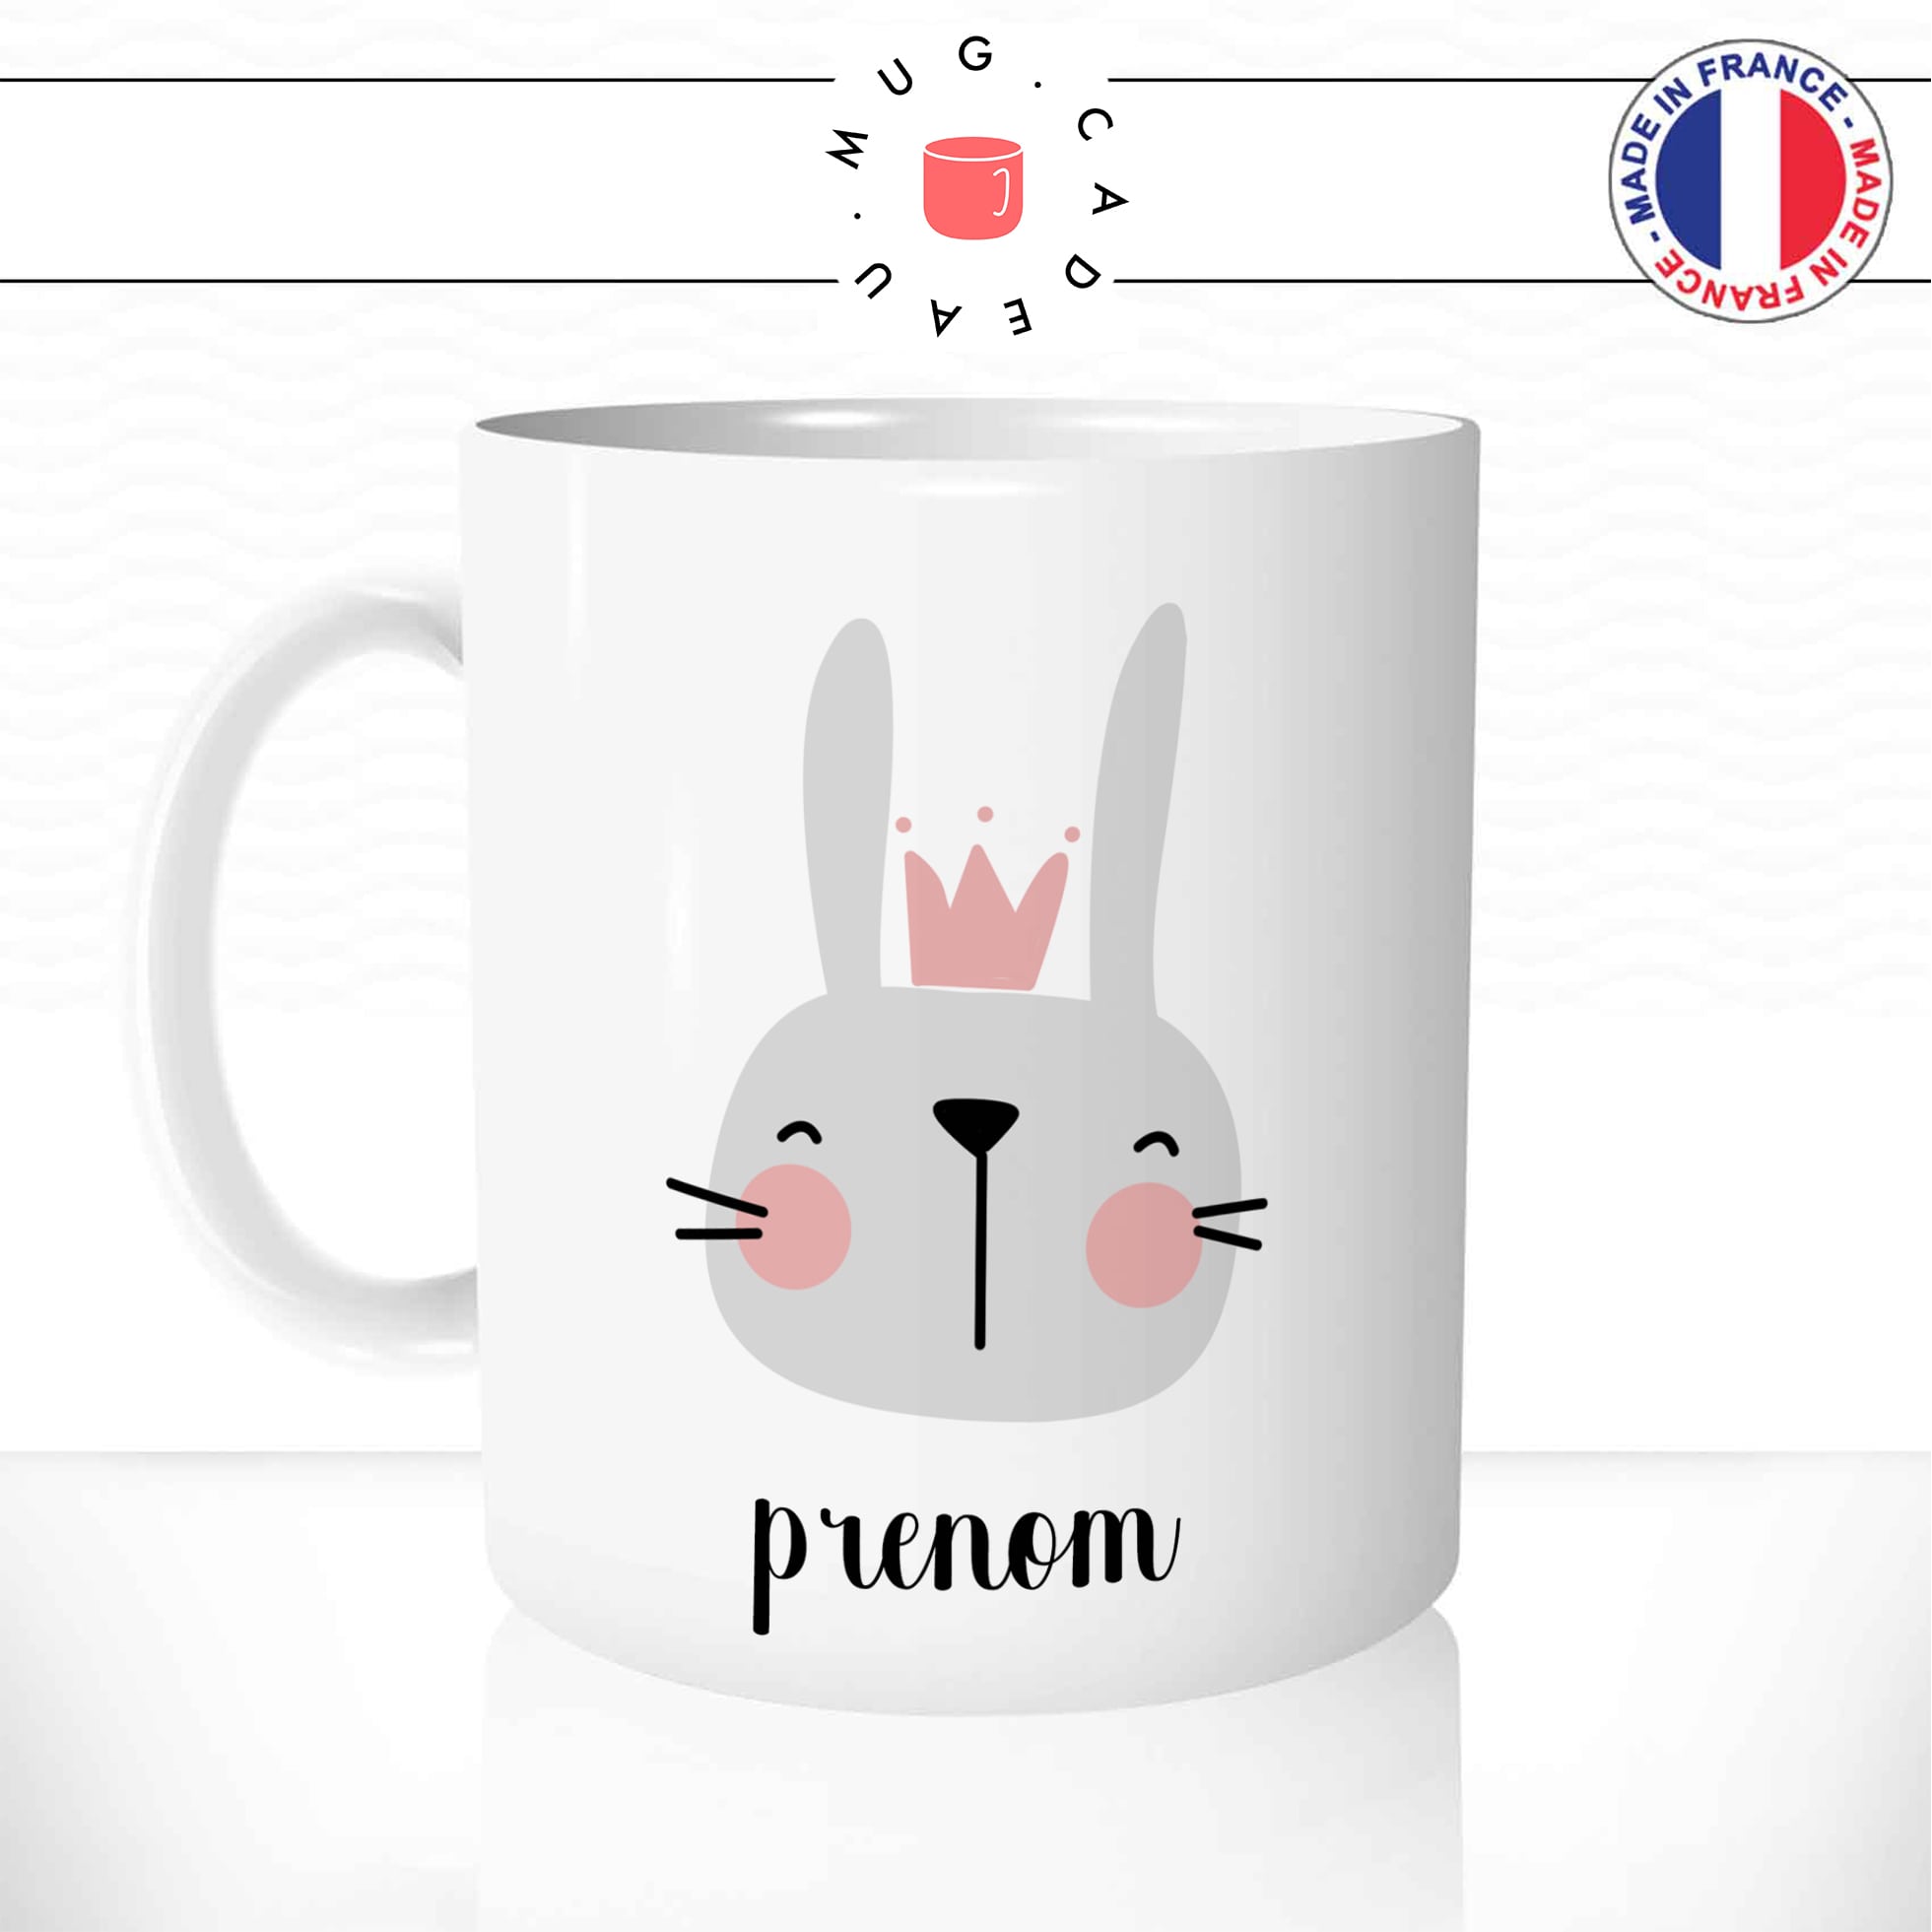 mug-tasse-lapin-rabbit-princesse-lapine-reine-gris-rose-enfant-couronne-café-thé-idée-cadeau-original-prenom-personnalisable-min